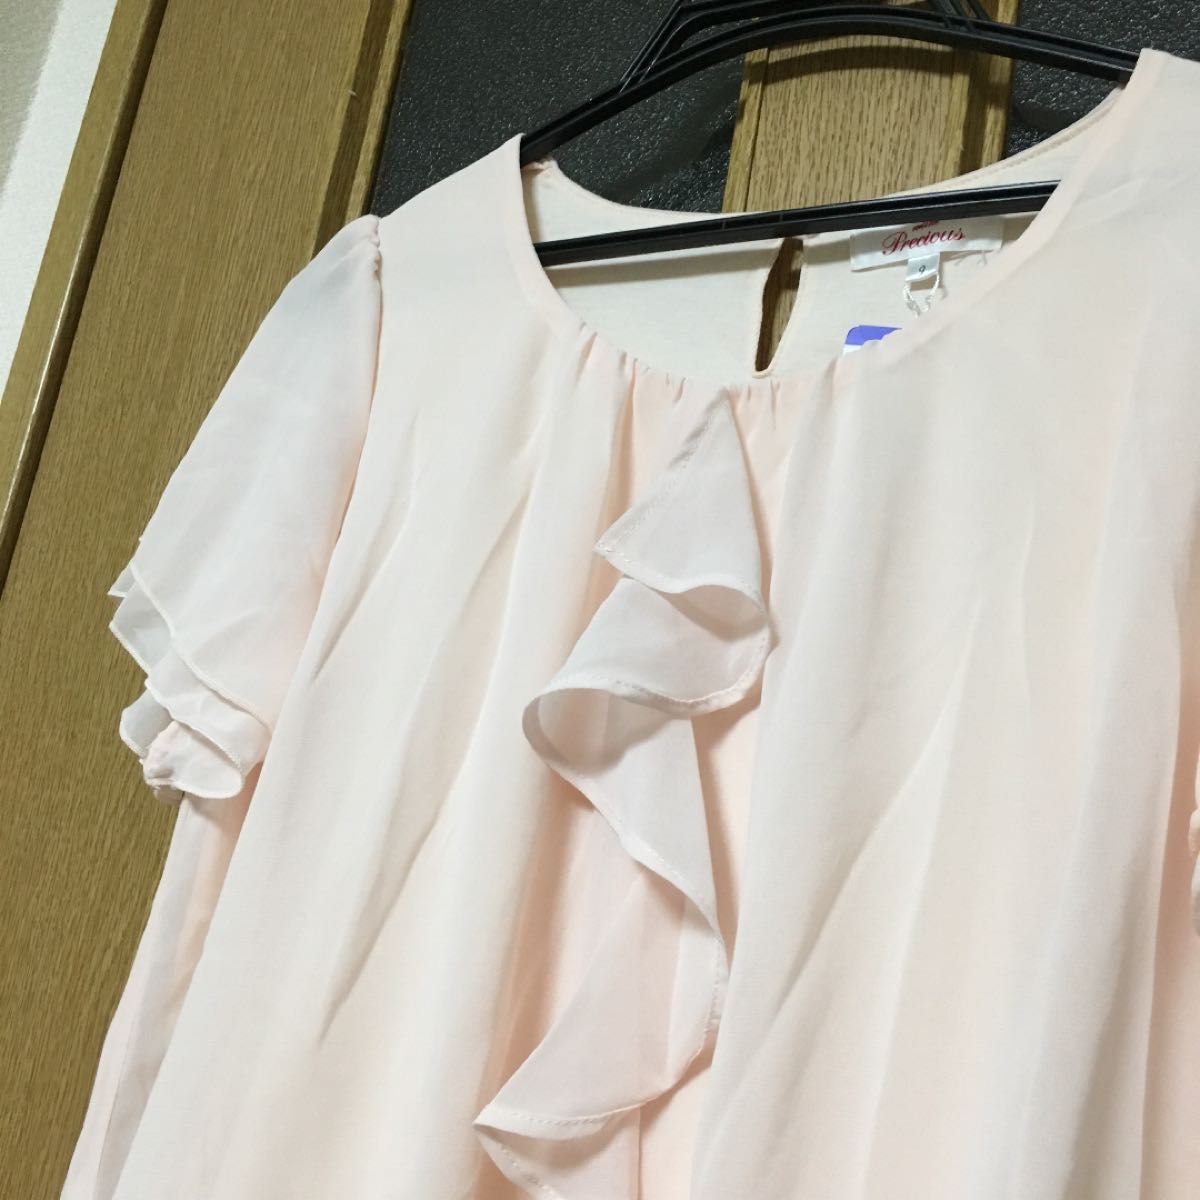 ◆最終価格◆佐々木希ブランド ブラウス 新品 ピンク 半袖 スーツインナー 人気 値下げ不可